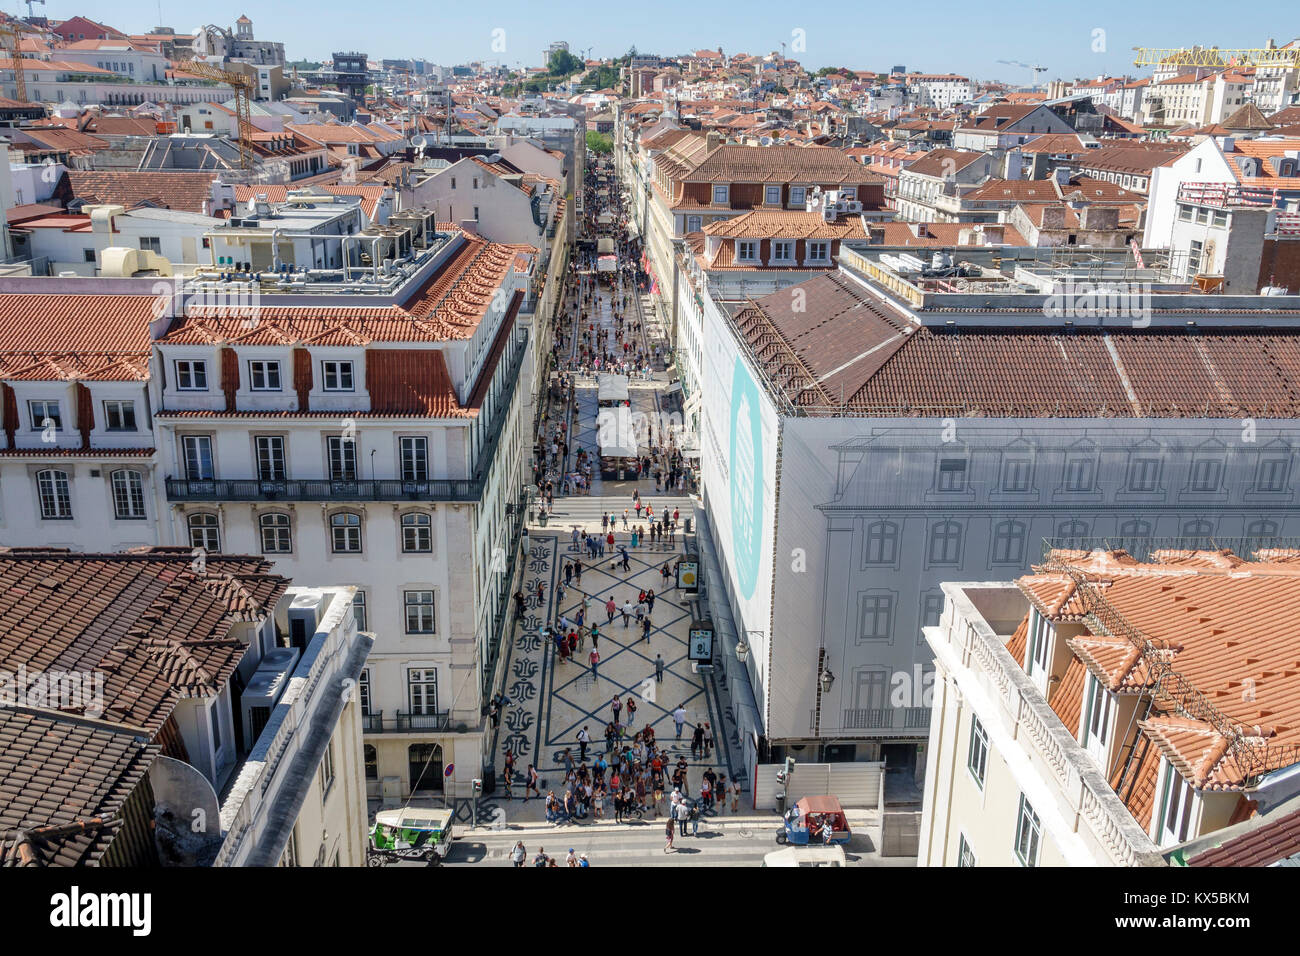 Lisbona Portogallo,Baixa,Chiado,centro storico,Rua Augusta,centro commerciale pedonale,passeggiata,vista aerea dall'alto,vista,panoramica,skylin città Foto Stock